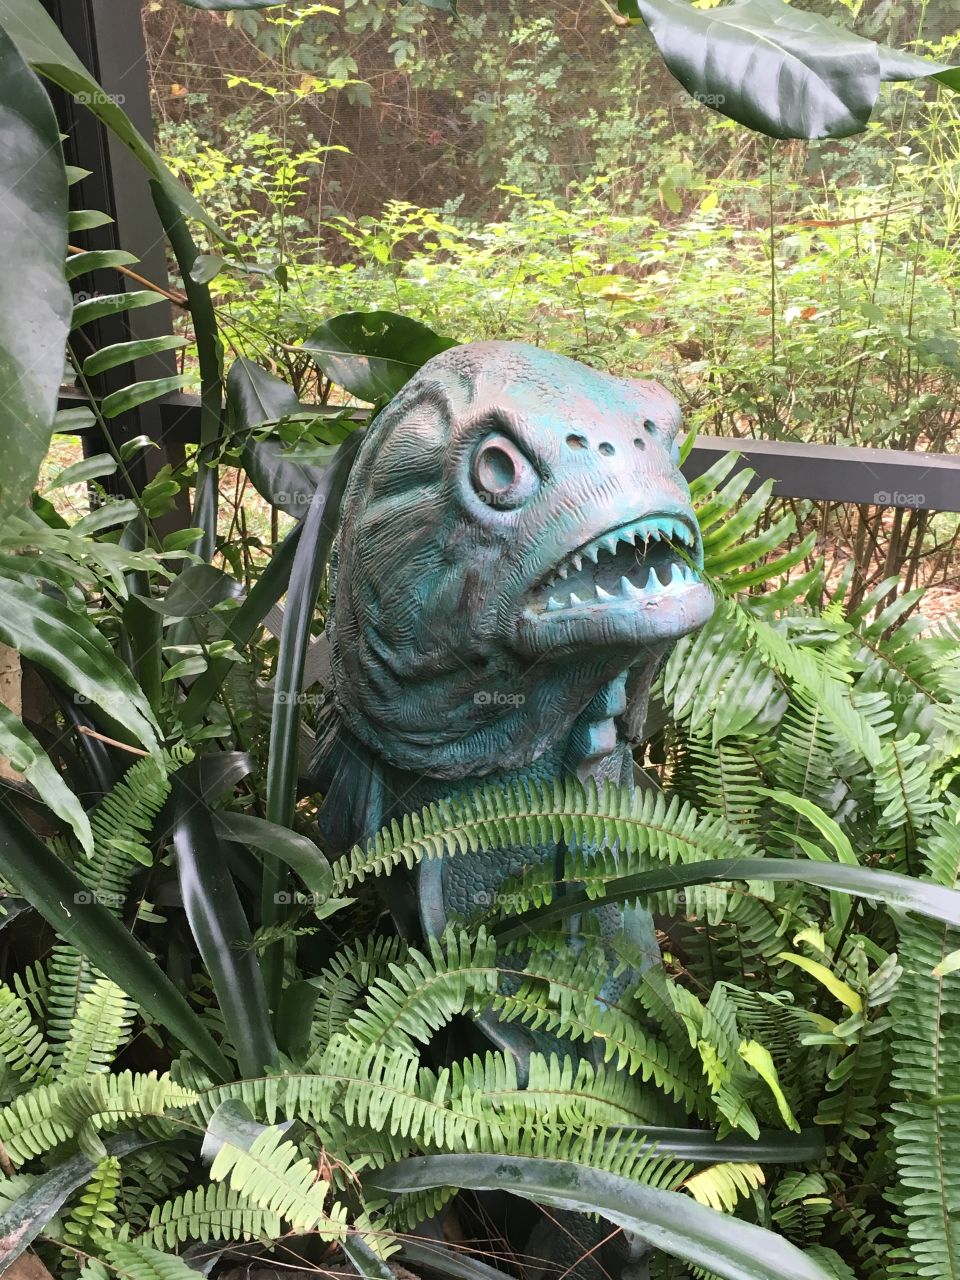 Piranha Statue in the garden